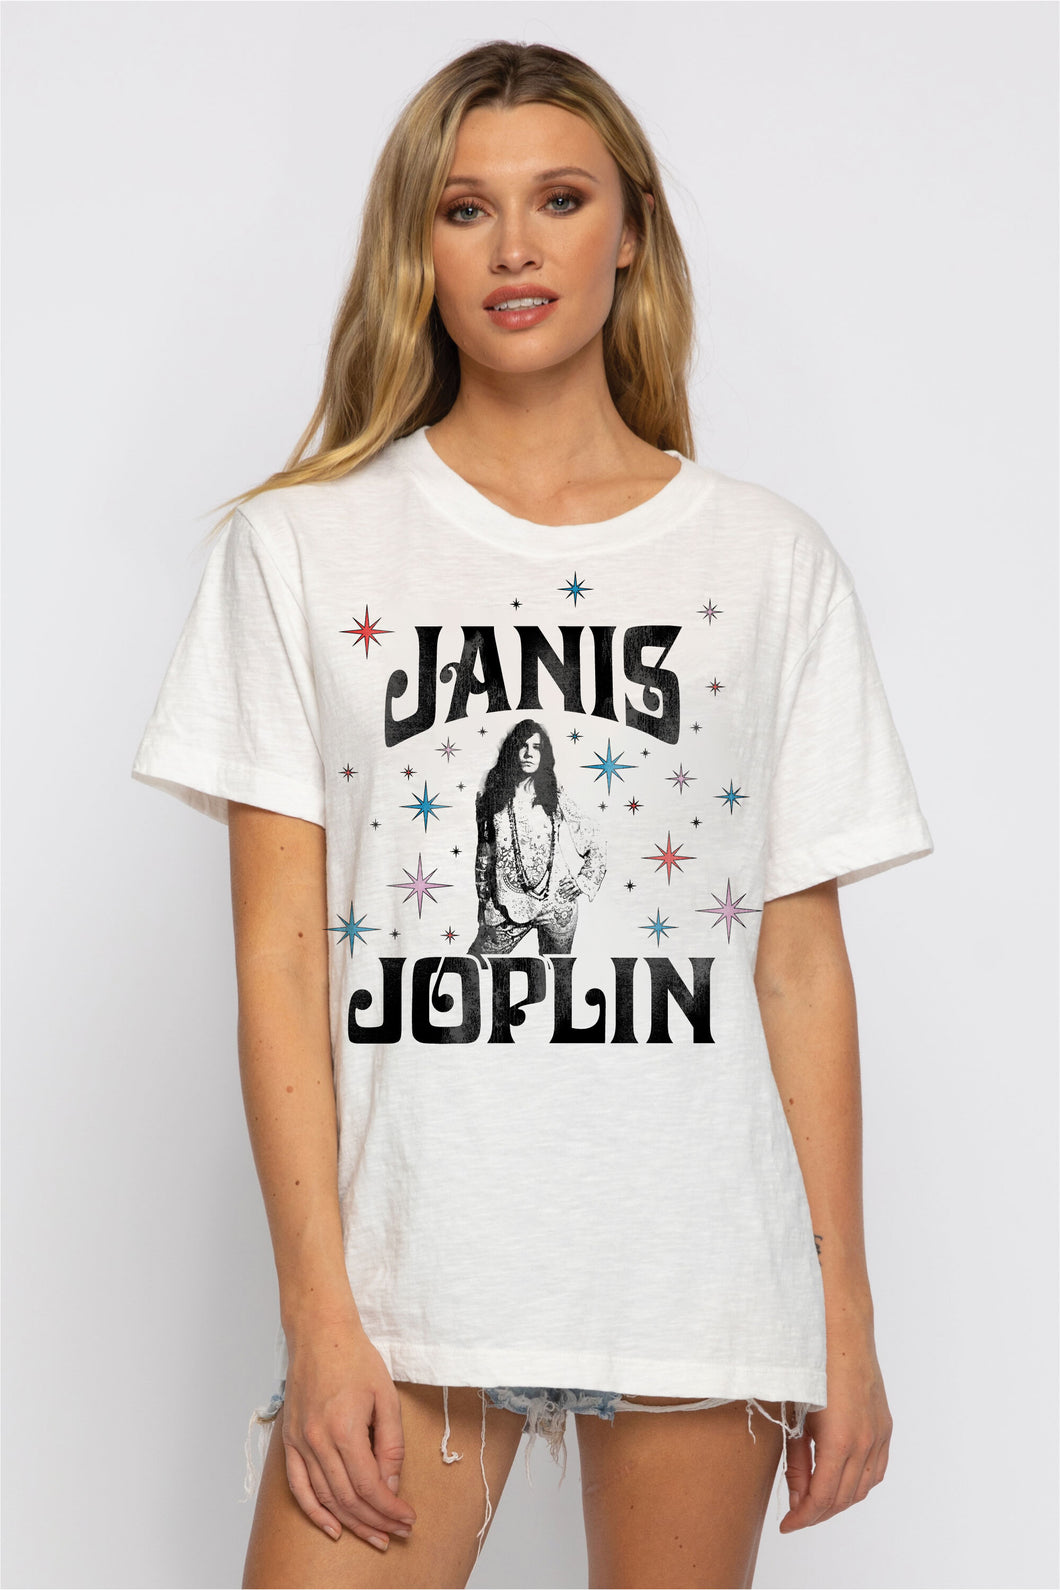 Janis Joplin Boyfriend Tee